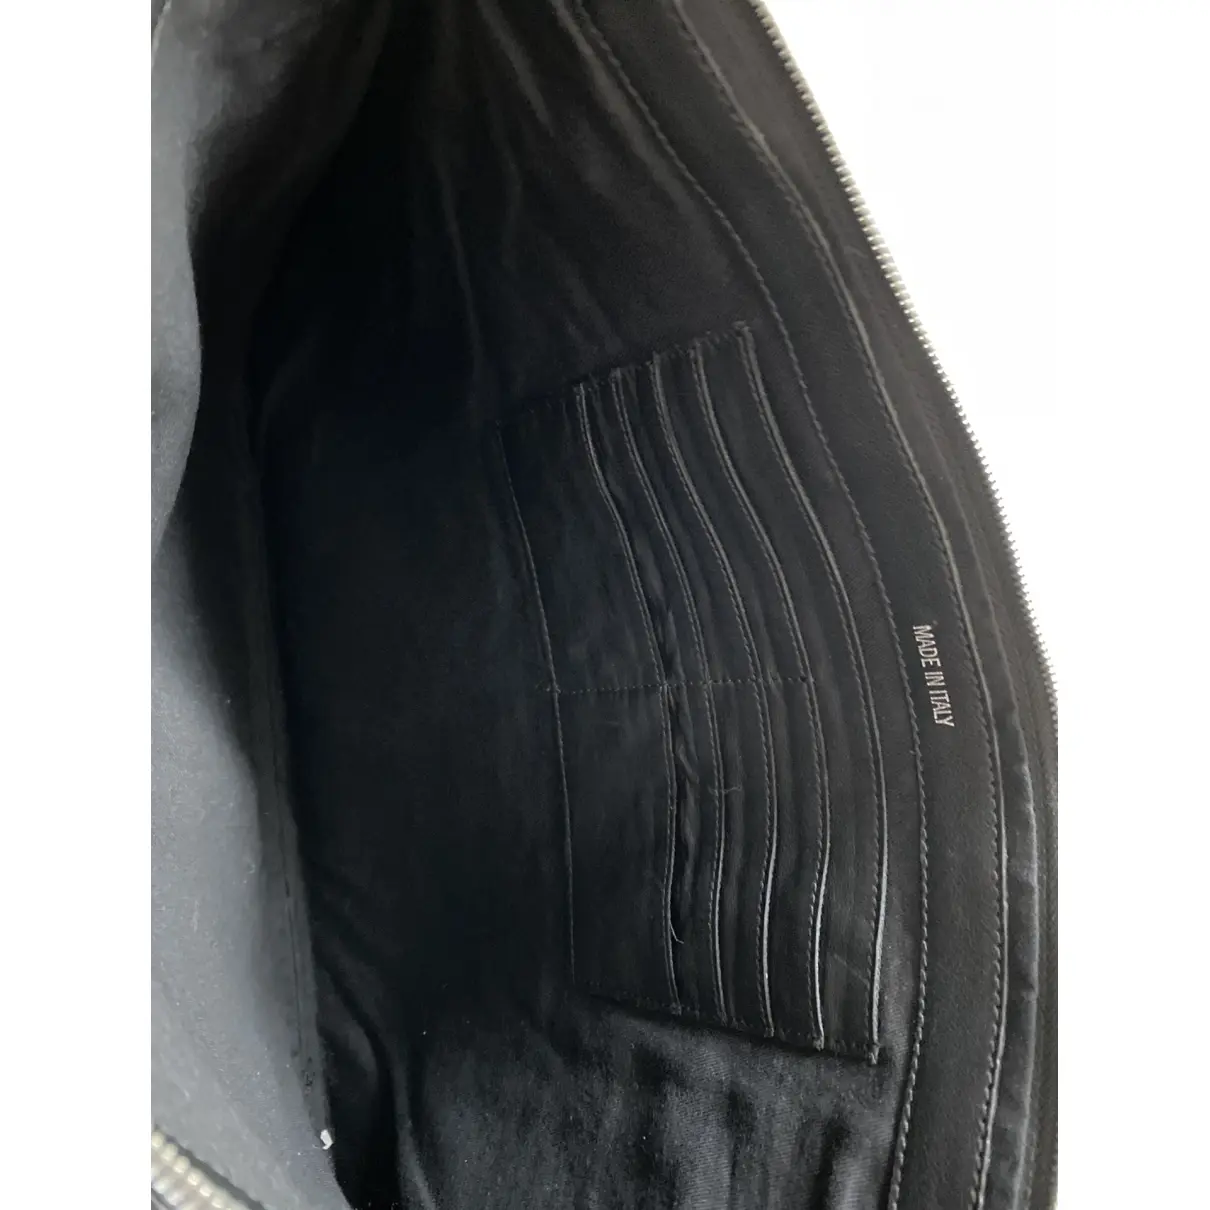 Buy Zadig & Voltaire Rock leather clutch bag online